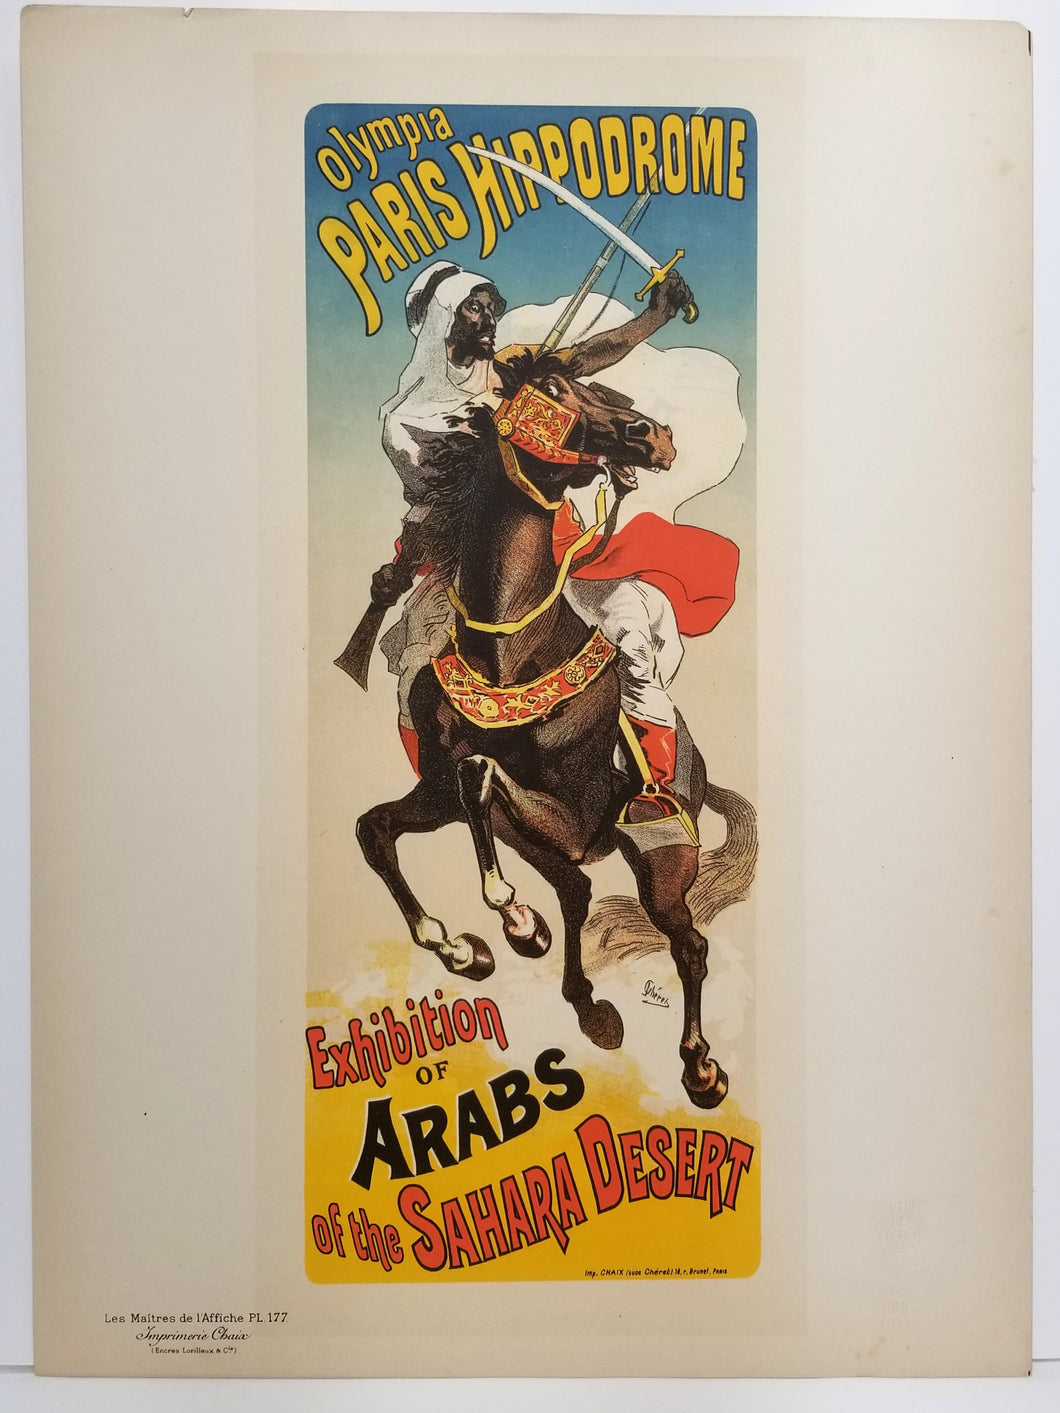 Exhibition d'Arabes du Sahara. 1899.